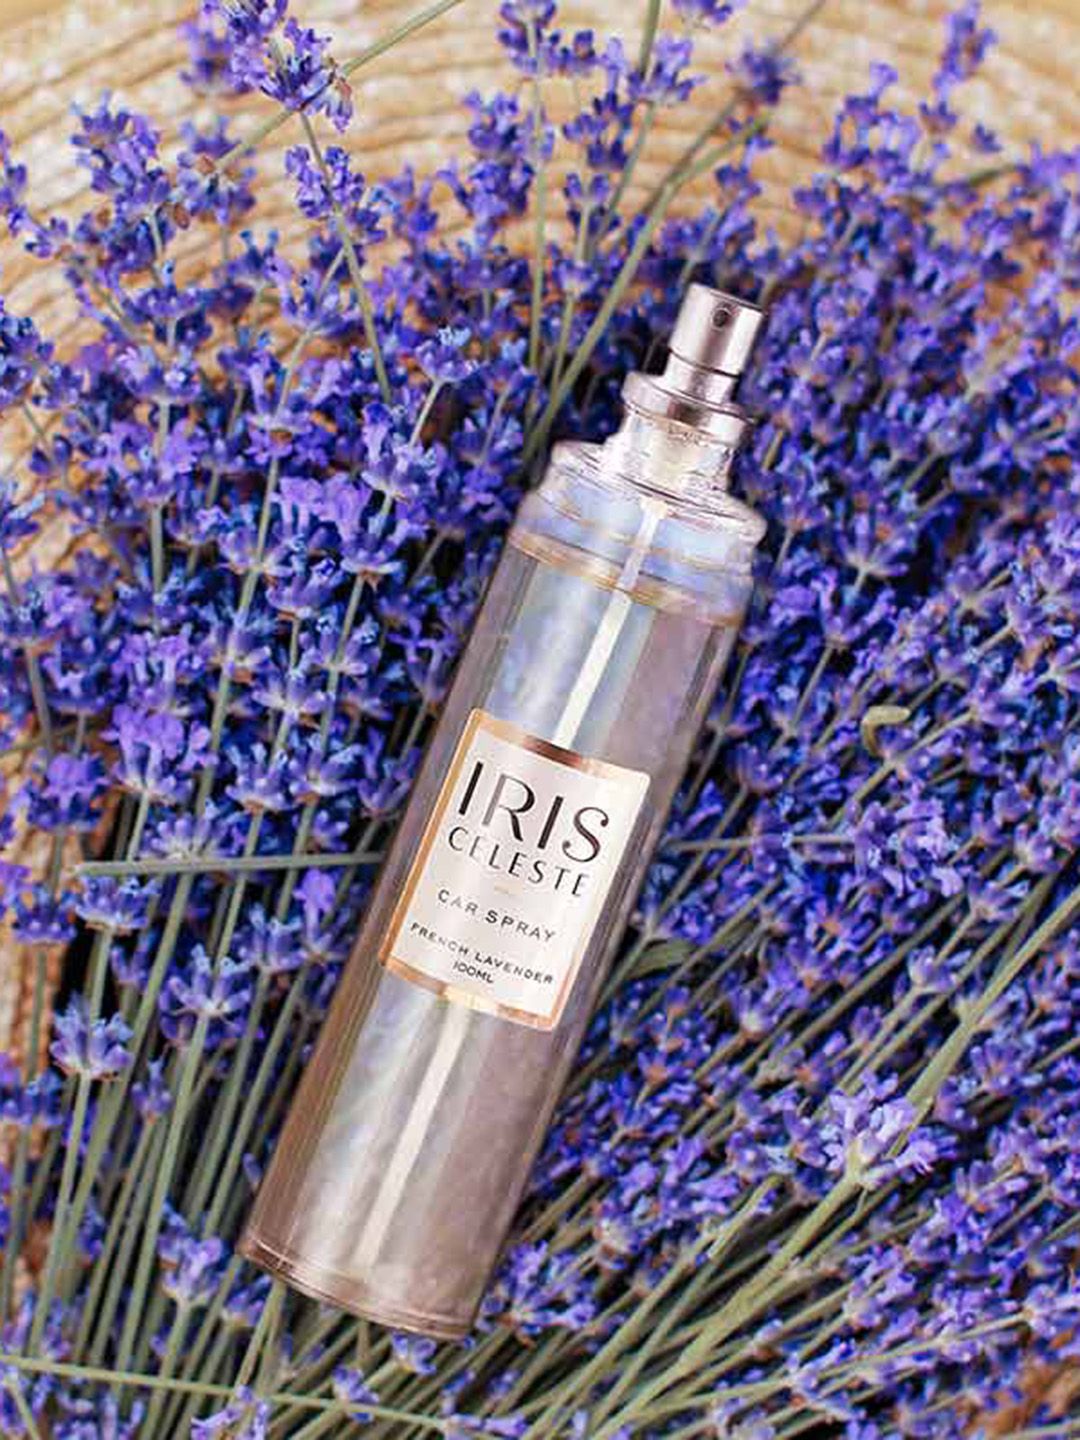 Iris Celeste Car Spray French Lavender 100 ml Price in India